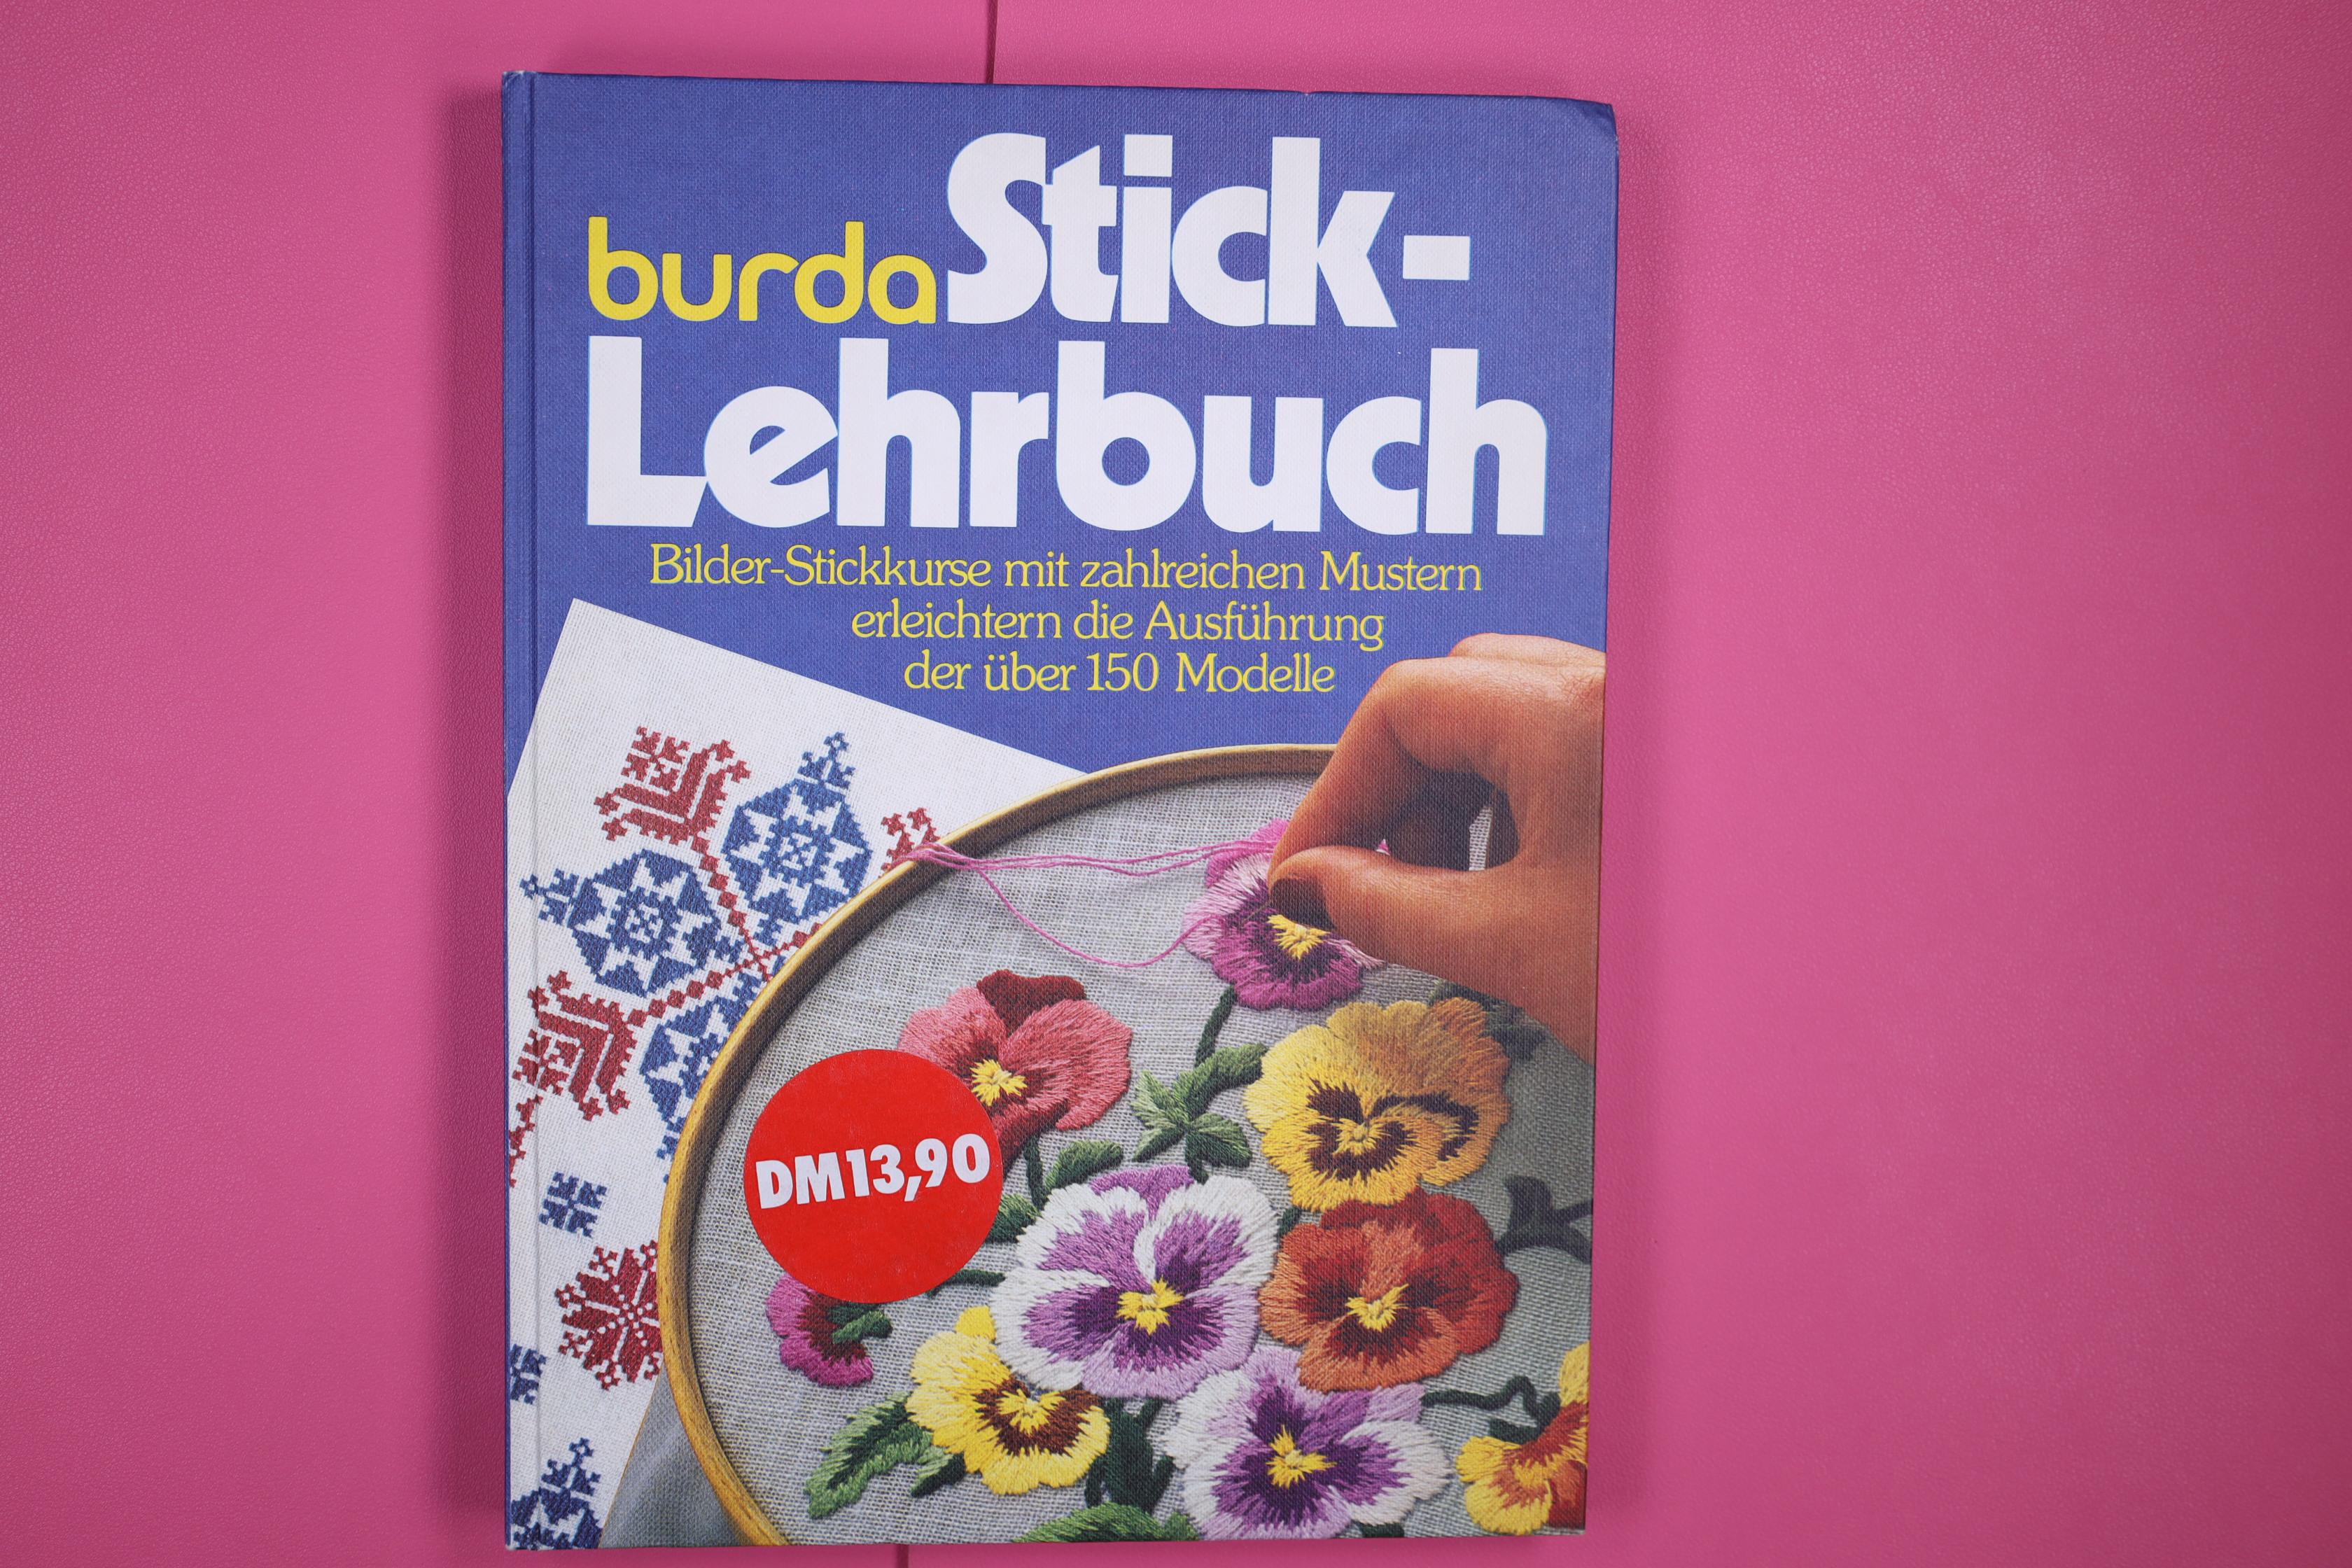 BURDA-STICK-LEHRBUCH. d. schönsten Stickvorschläge aus Anna ; abgeschlossene Stick-Lehrgänge mit über 150 Modellanregungen u. Mustervorschlägen - Kopp, Hannelore